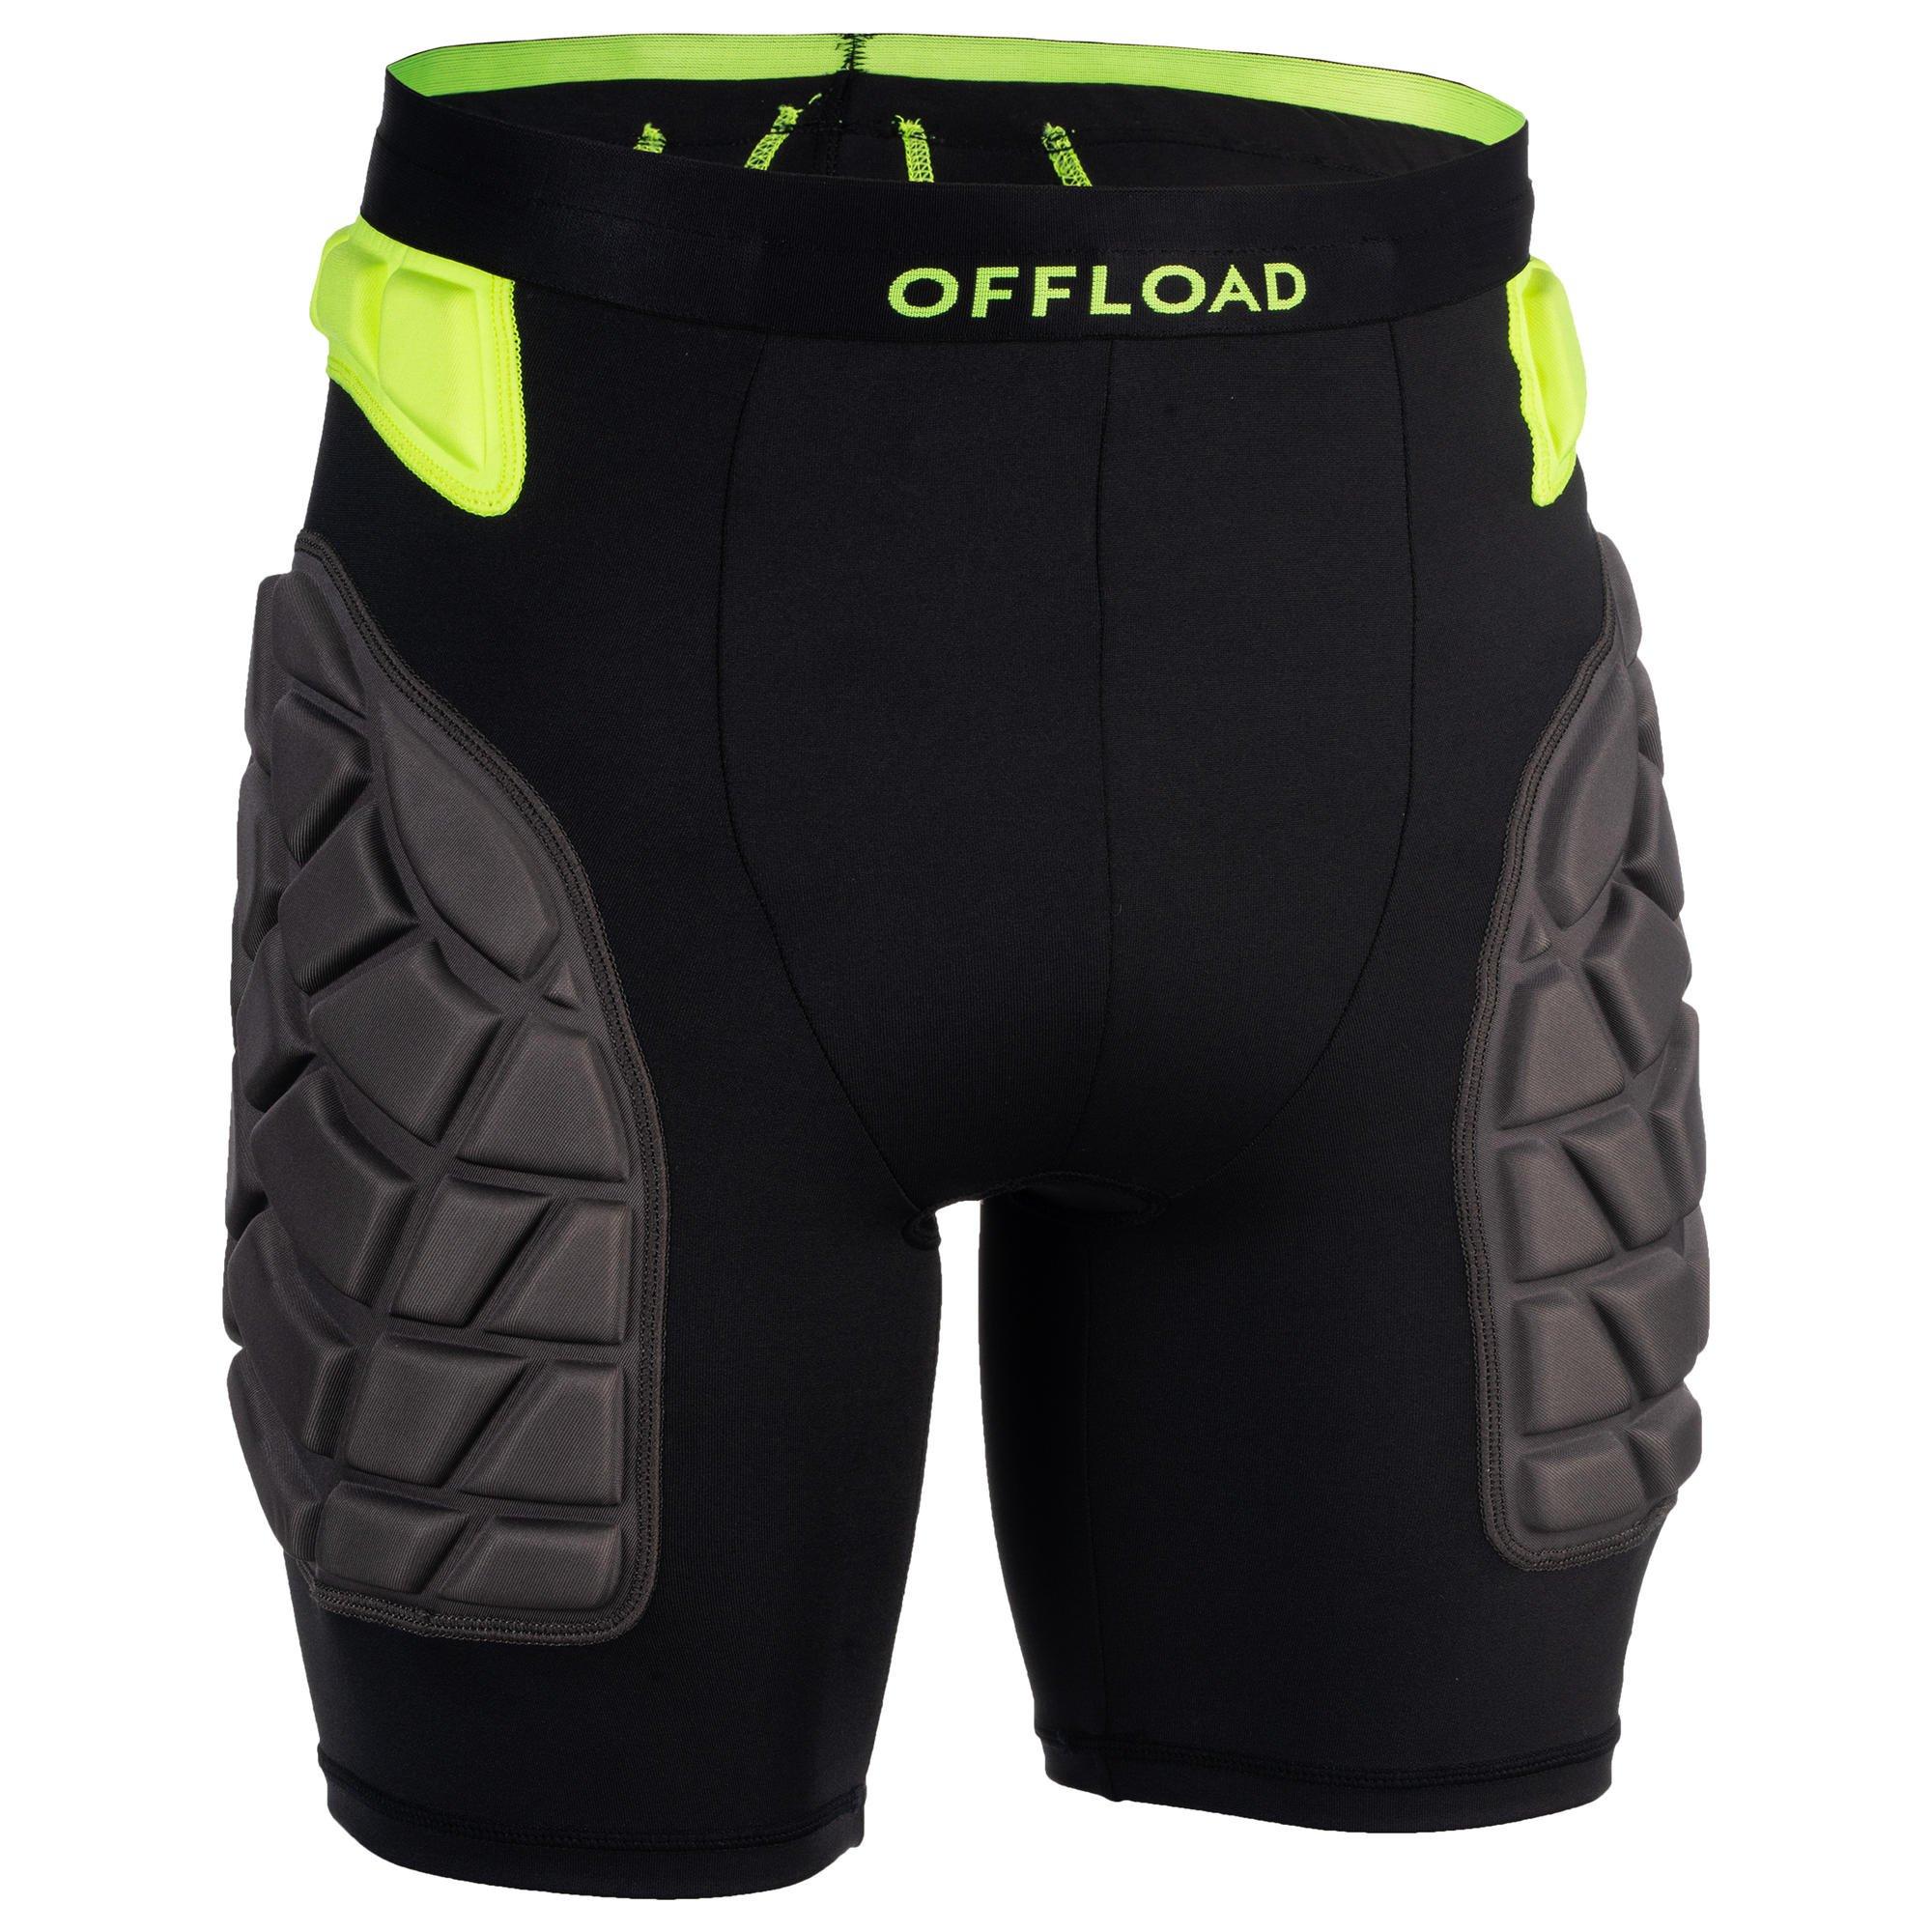 цена Защитные шорты для регби Decathlon R500 Offload, черный